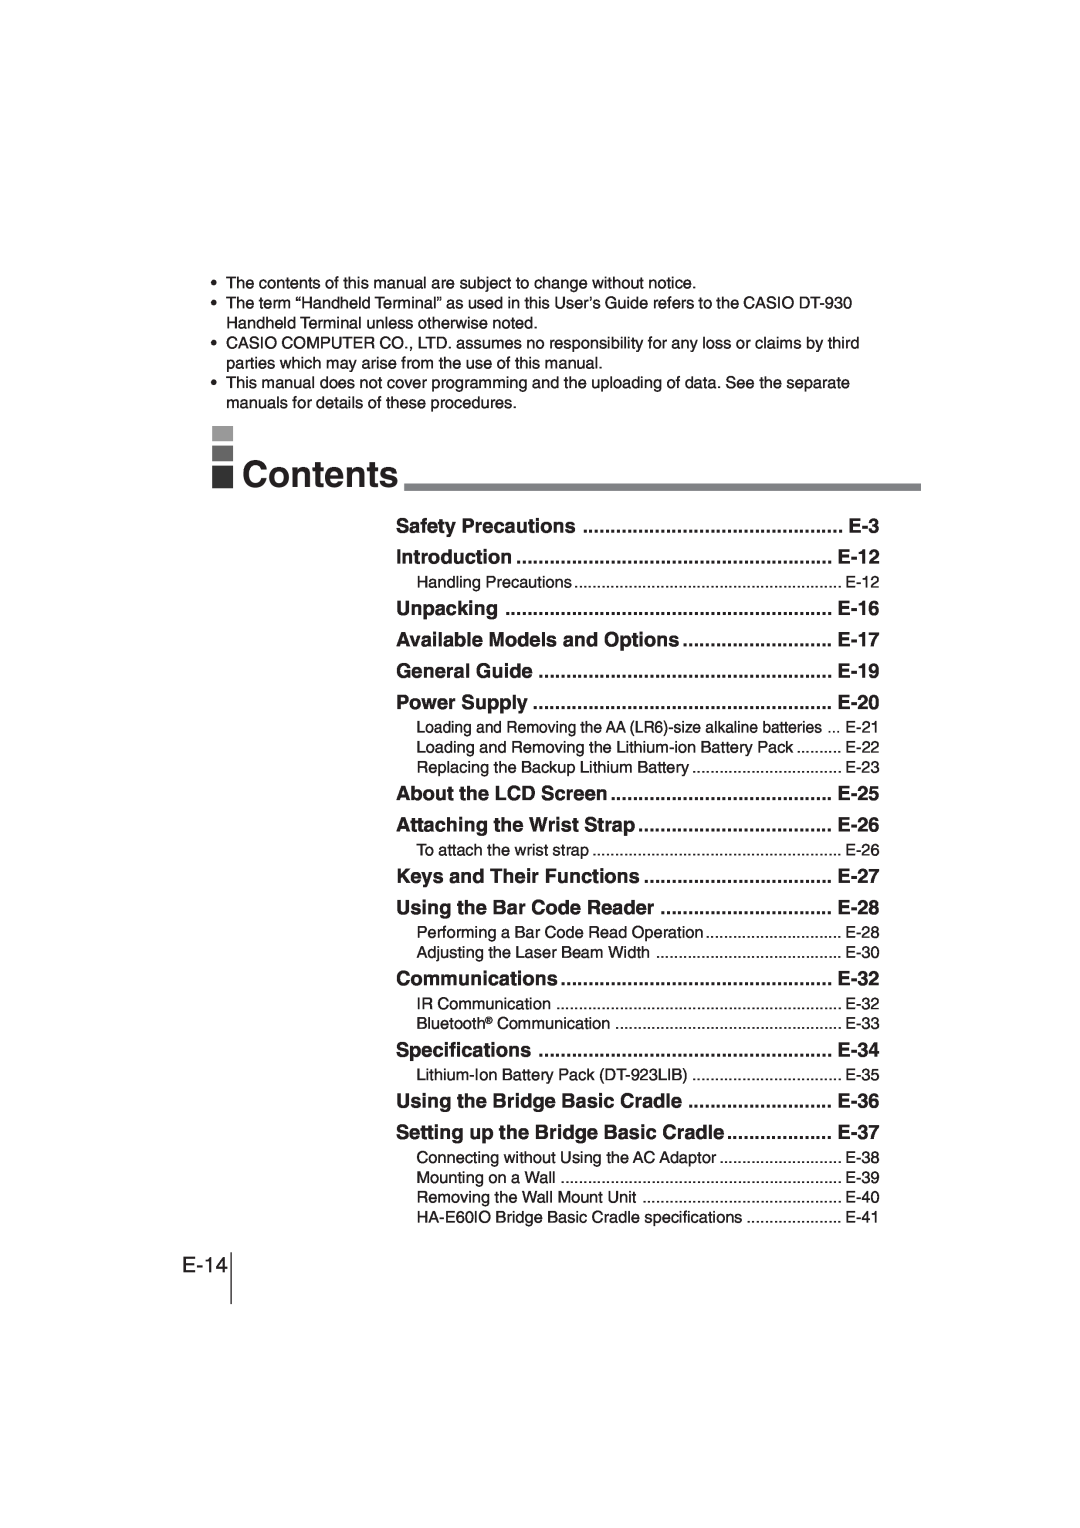 Casio DT-930 manual Contents, E-14 